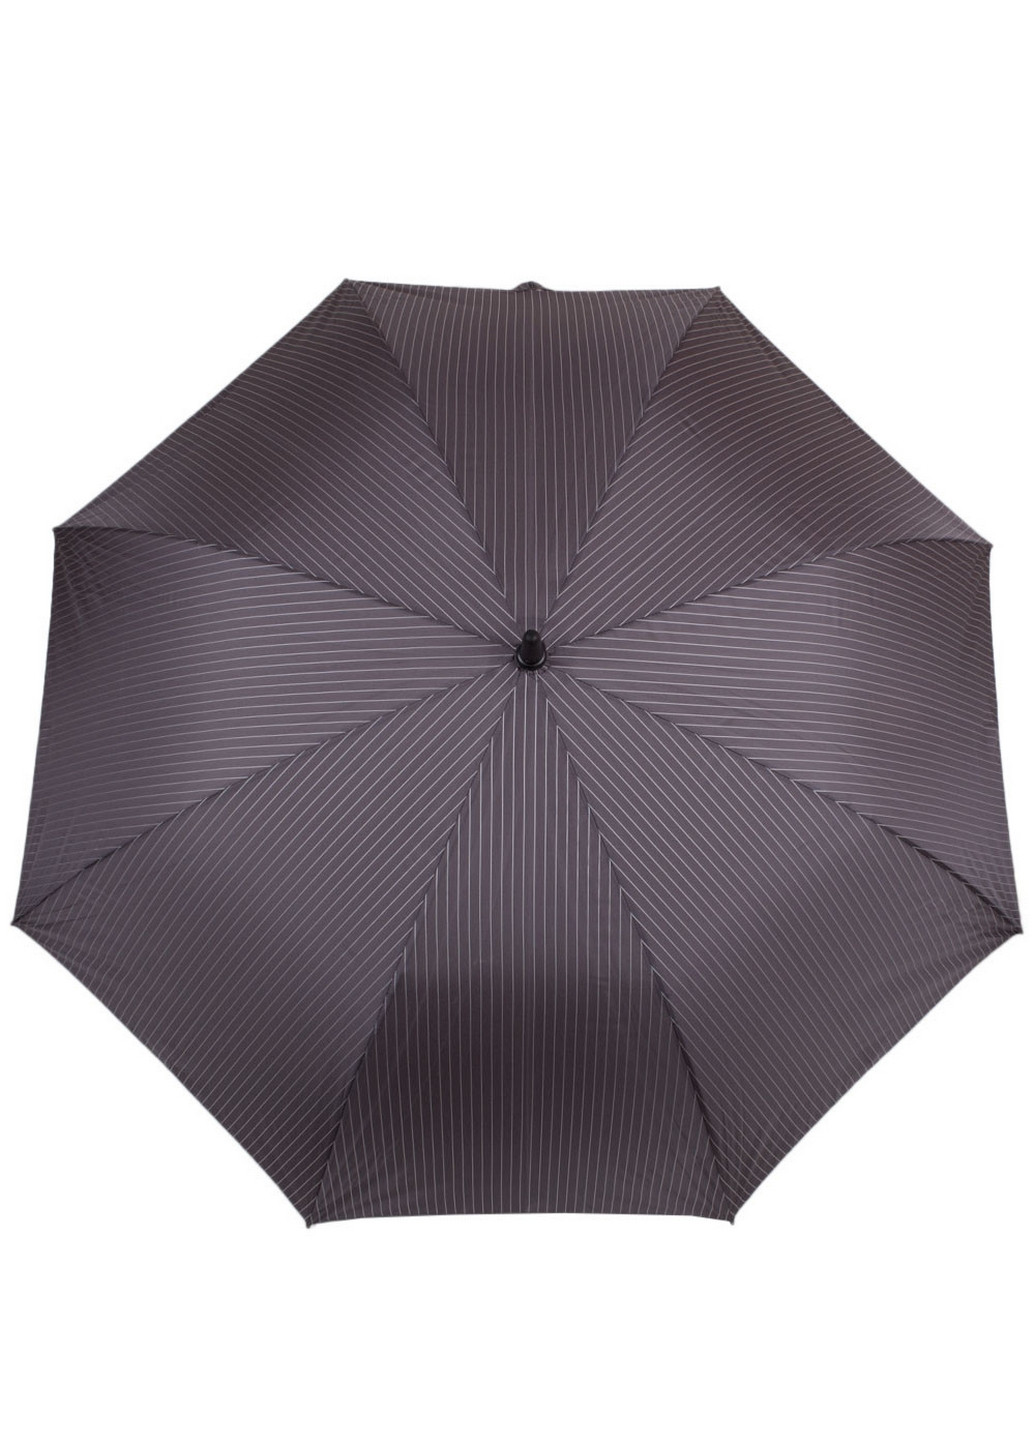 Зонт-трость мужской полуавтомат 117 см Fulton (260285624)